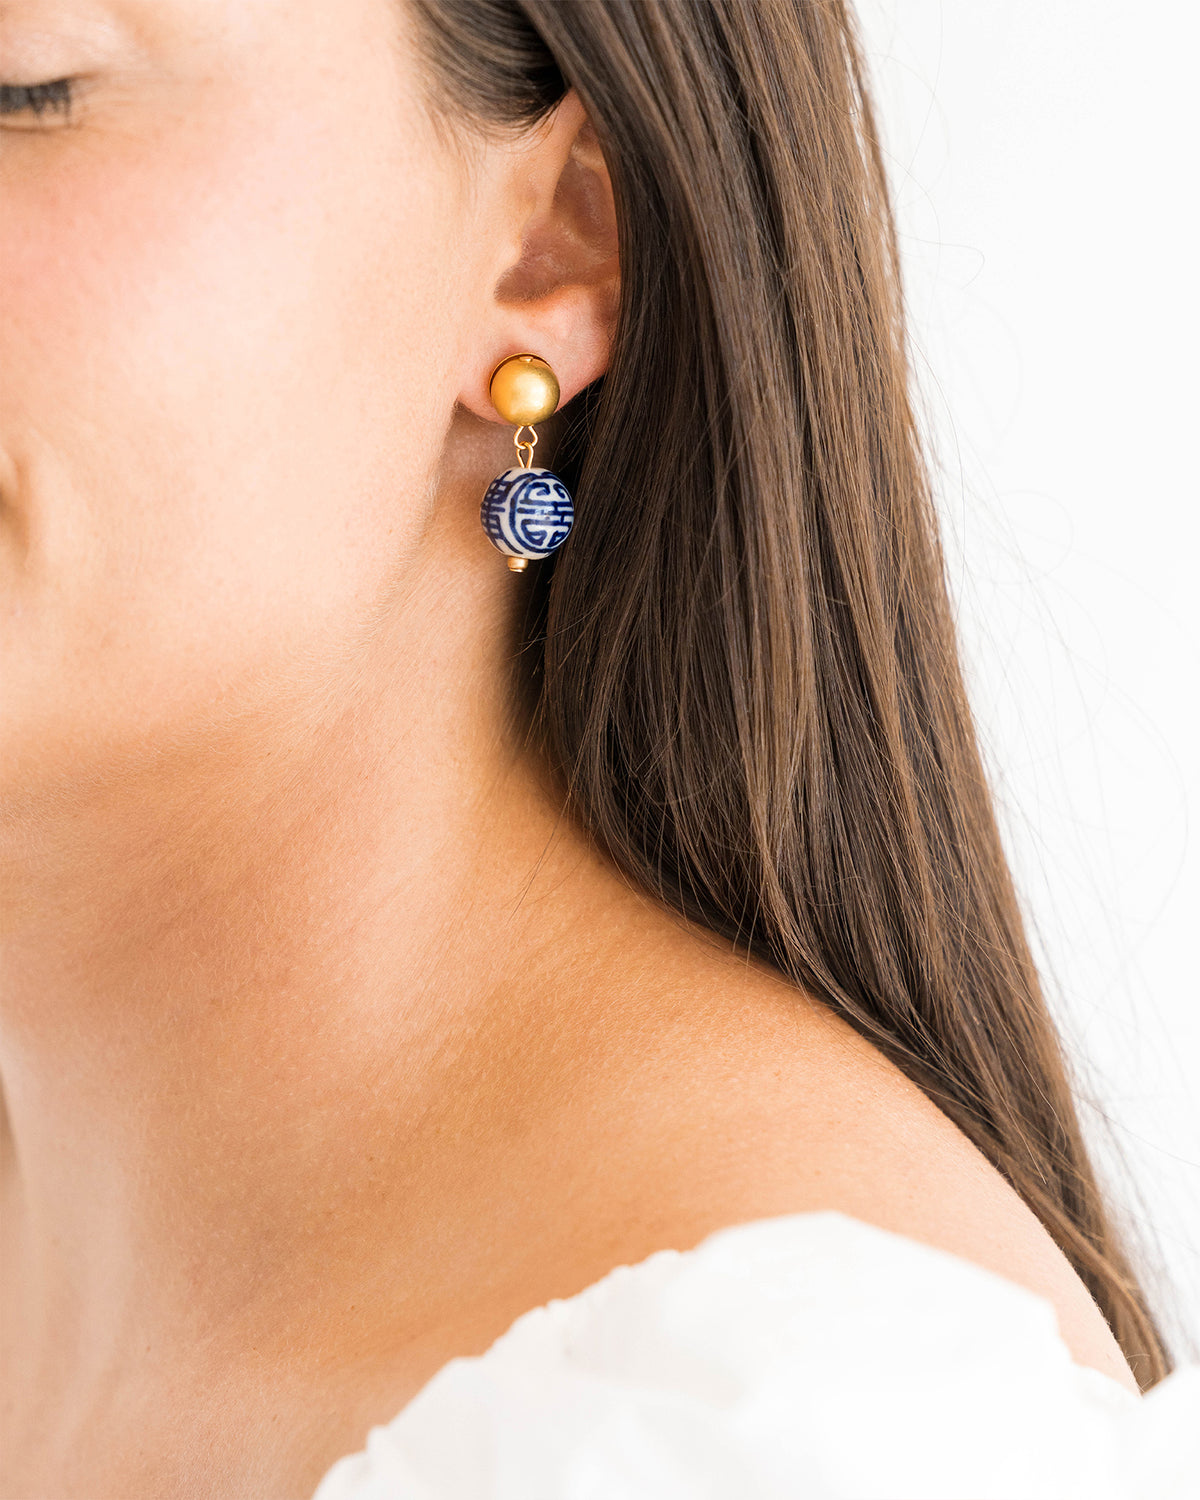 14K White Gold Diamond Blue Sapphire Pear-Drop Earrings